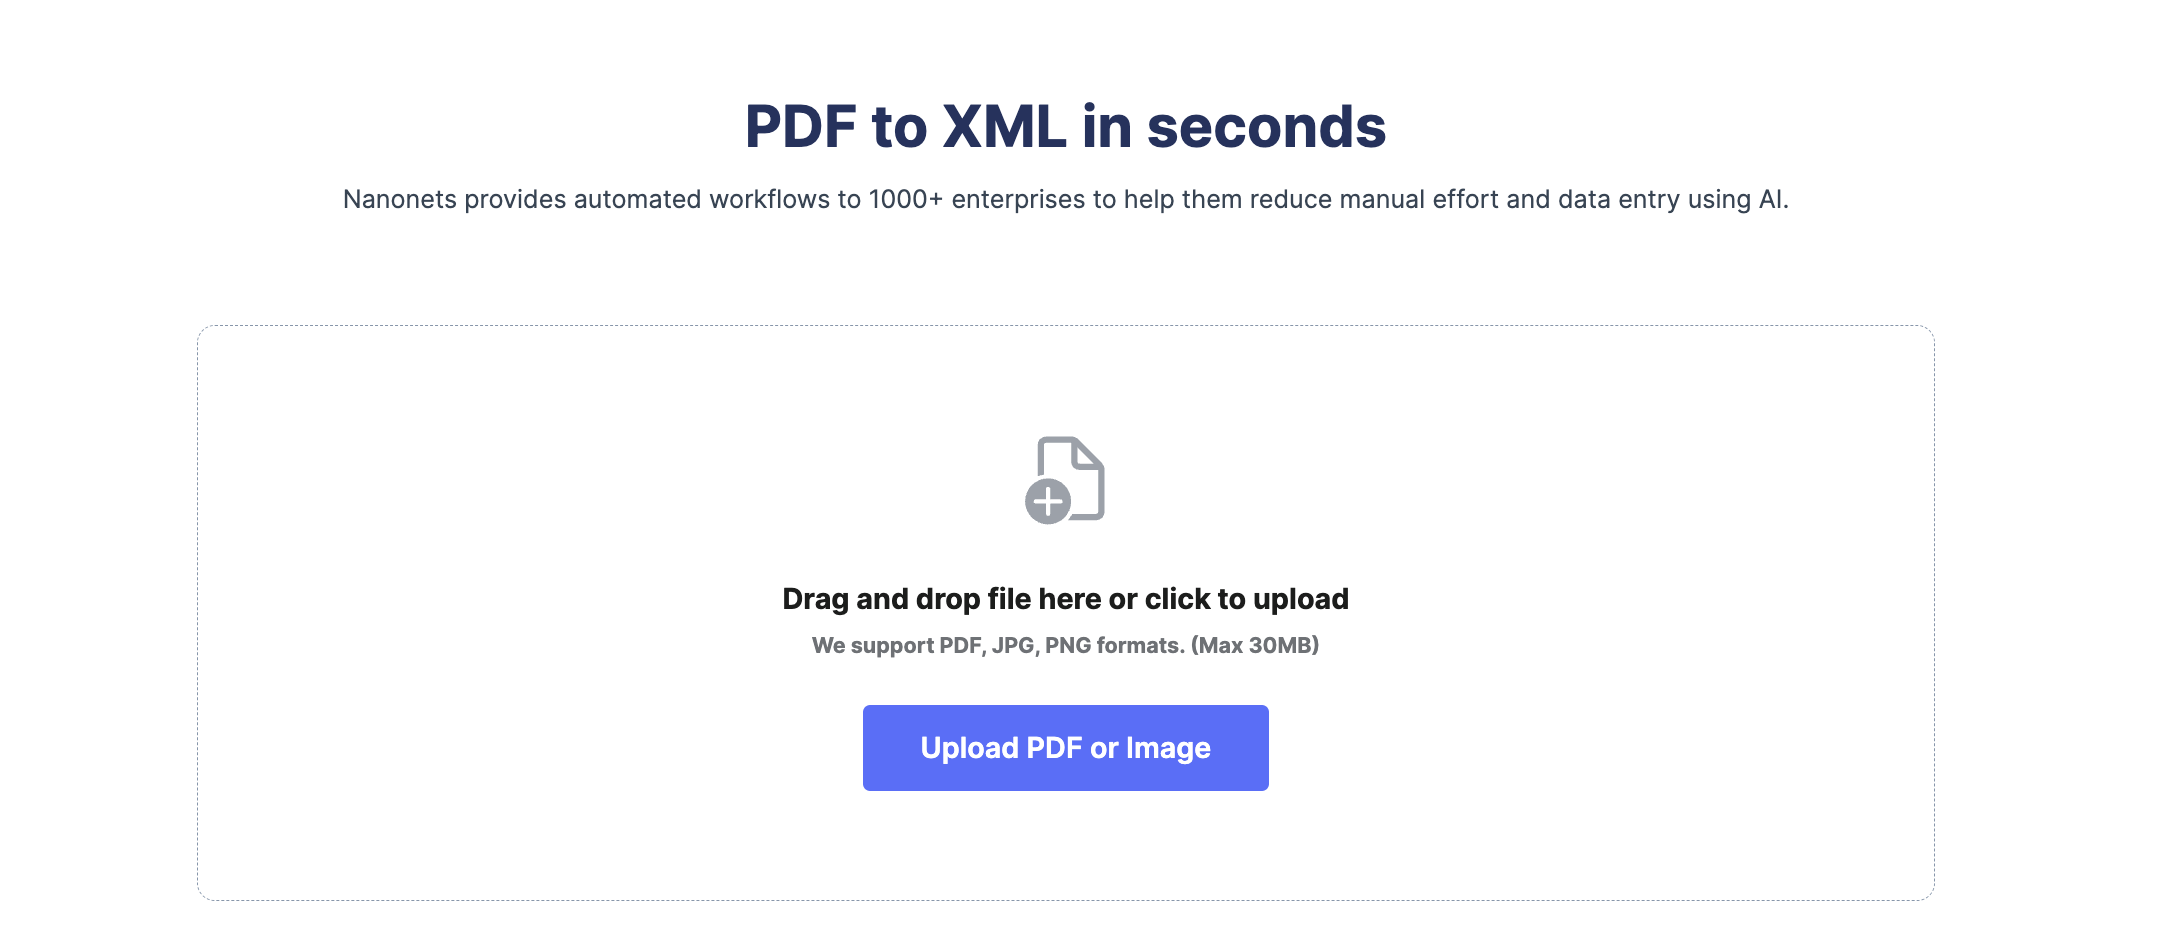 Kuidas teisendada PDF-i tasuta XML-i?